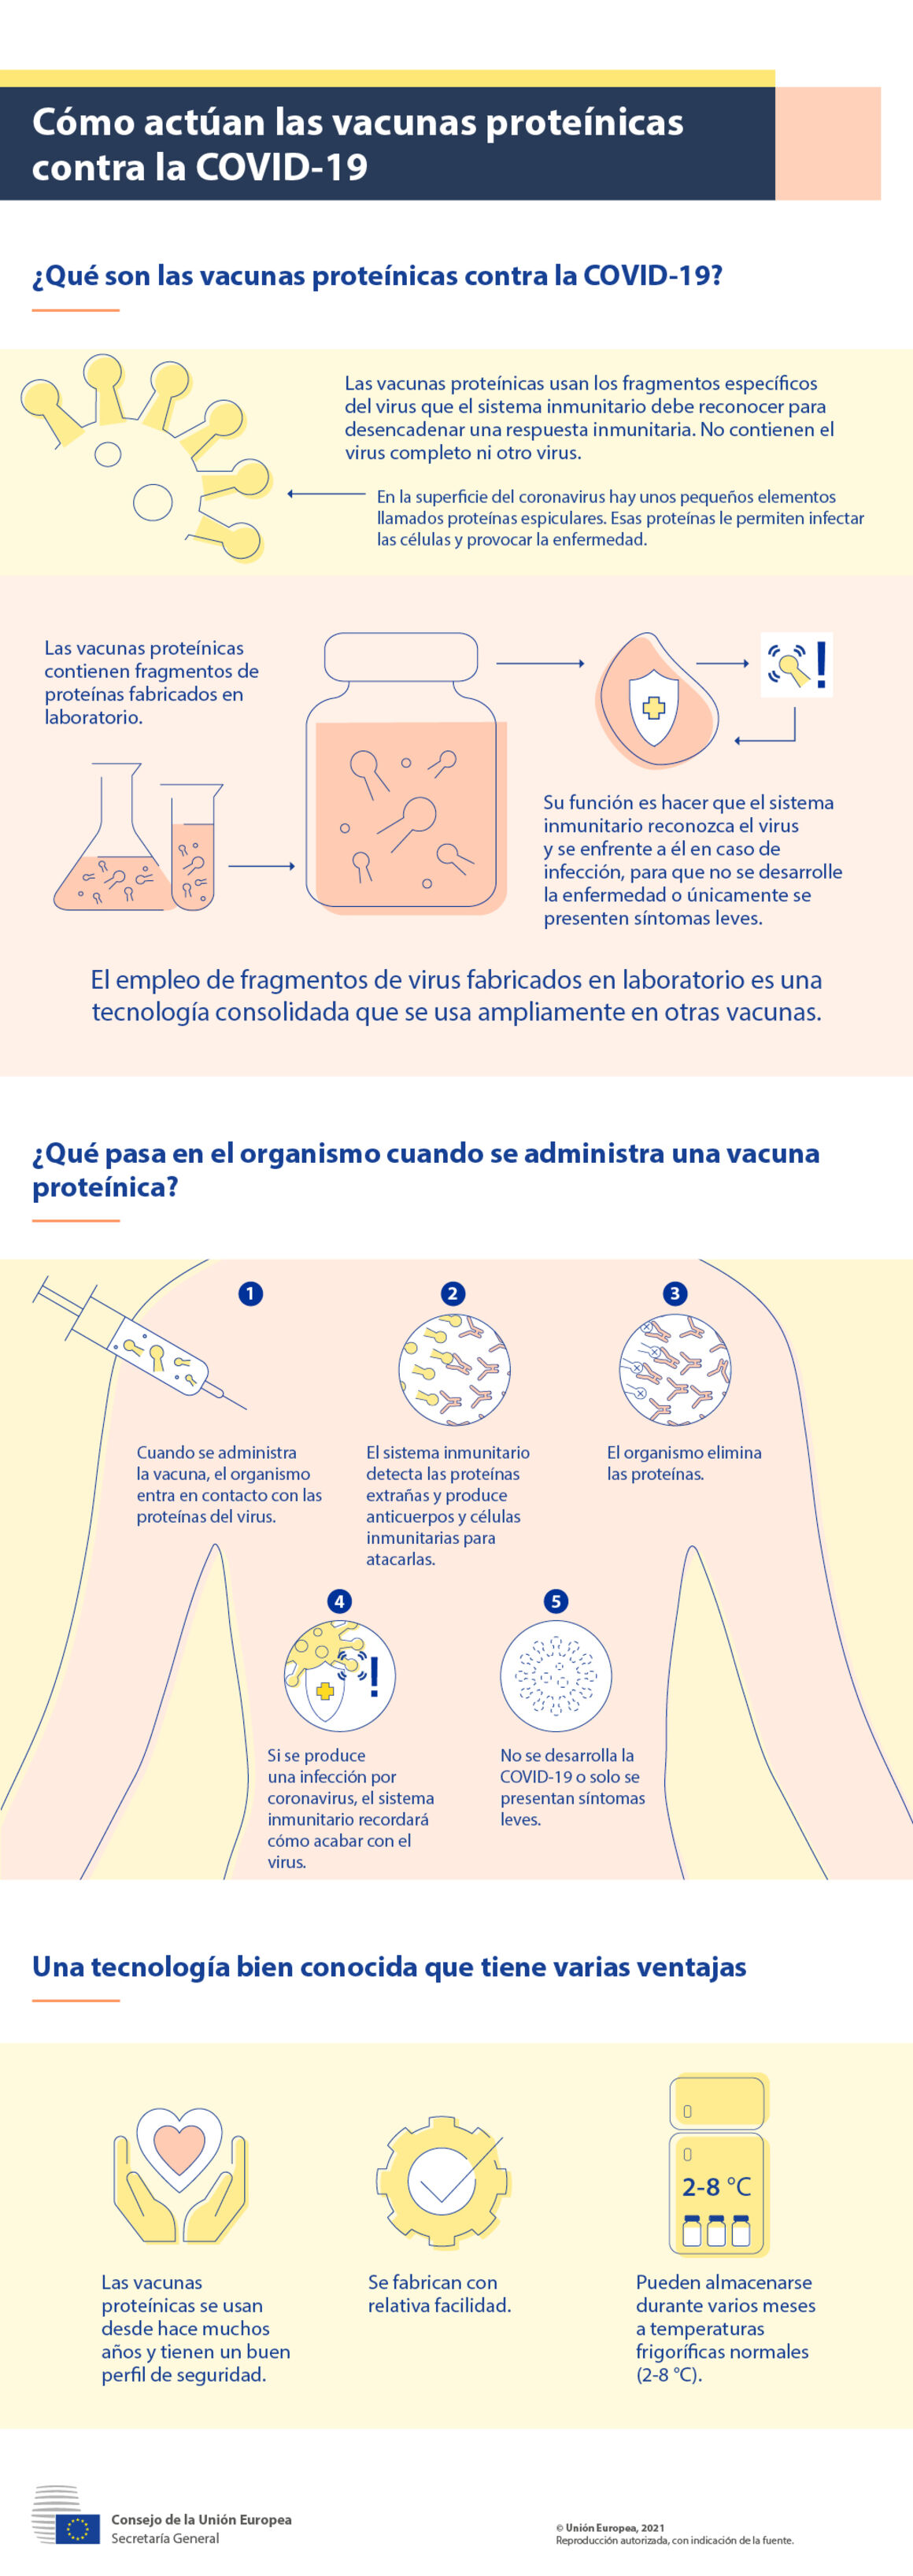 Infografía - Cómo actúan las vacunas proteínicas contra la COVID-19